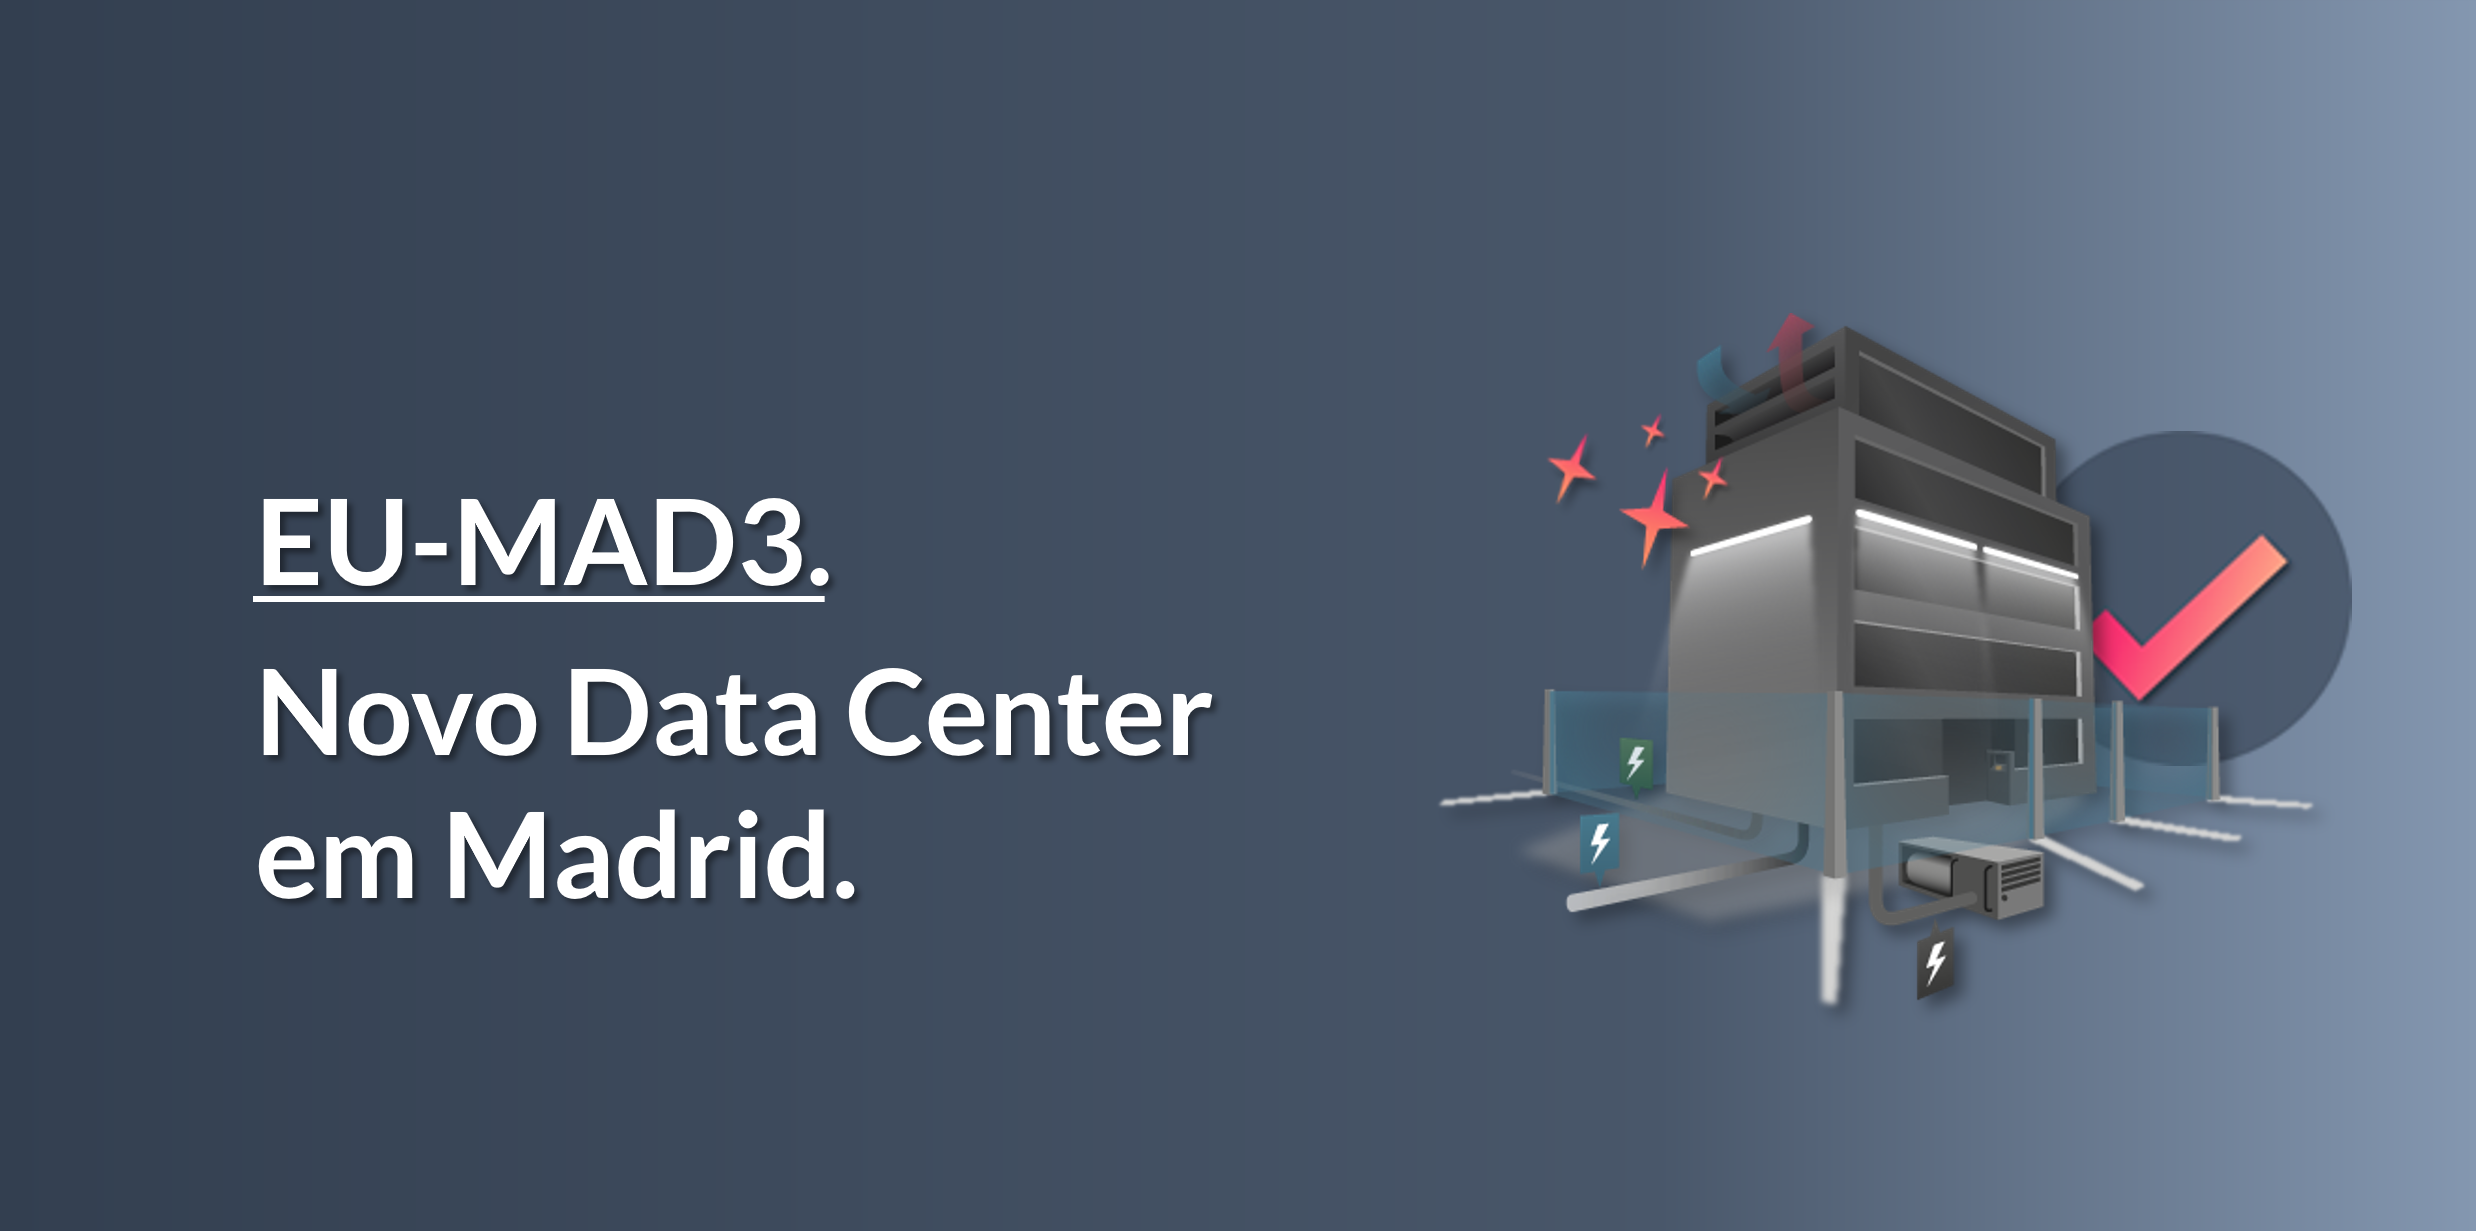 Novo Data Center em Madrid (EU-MAD3)